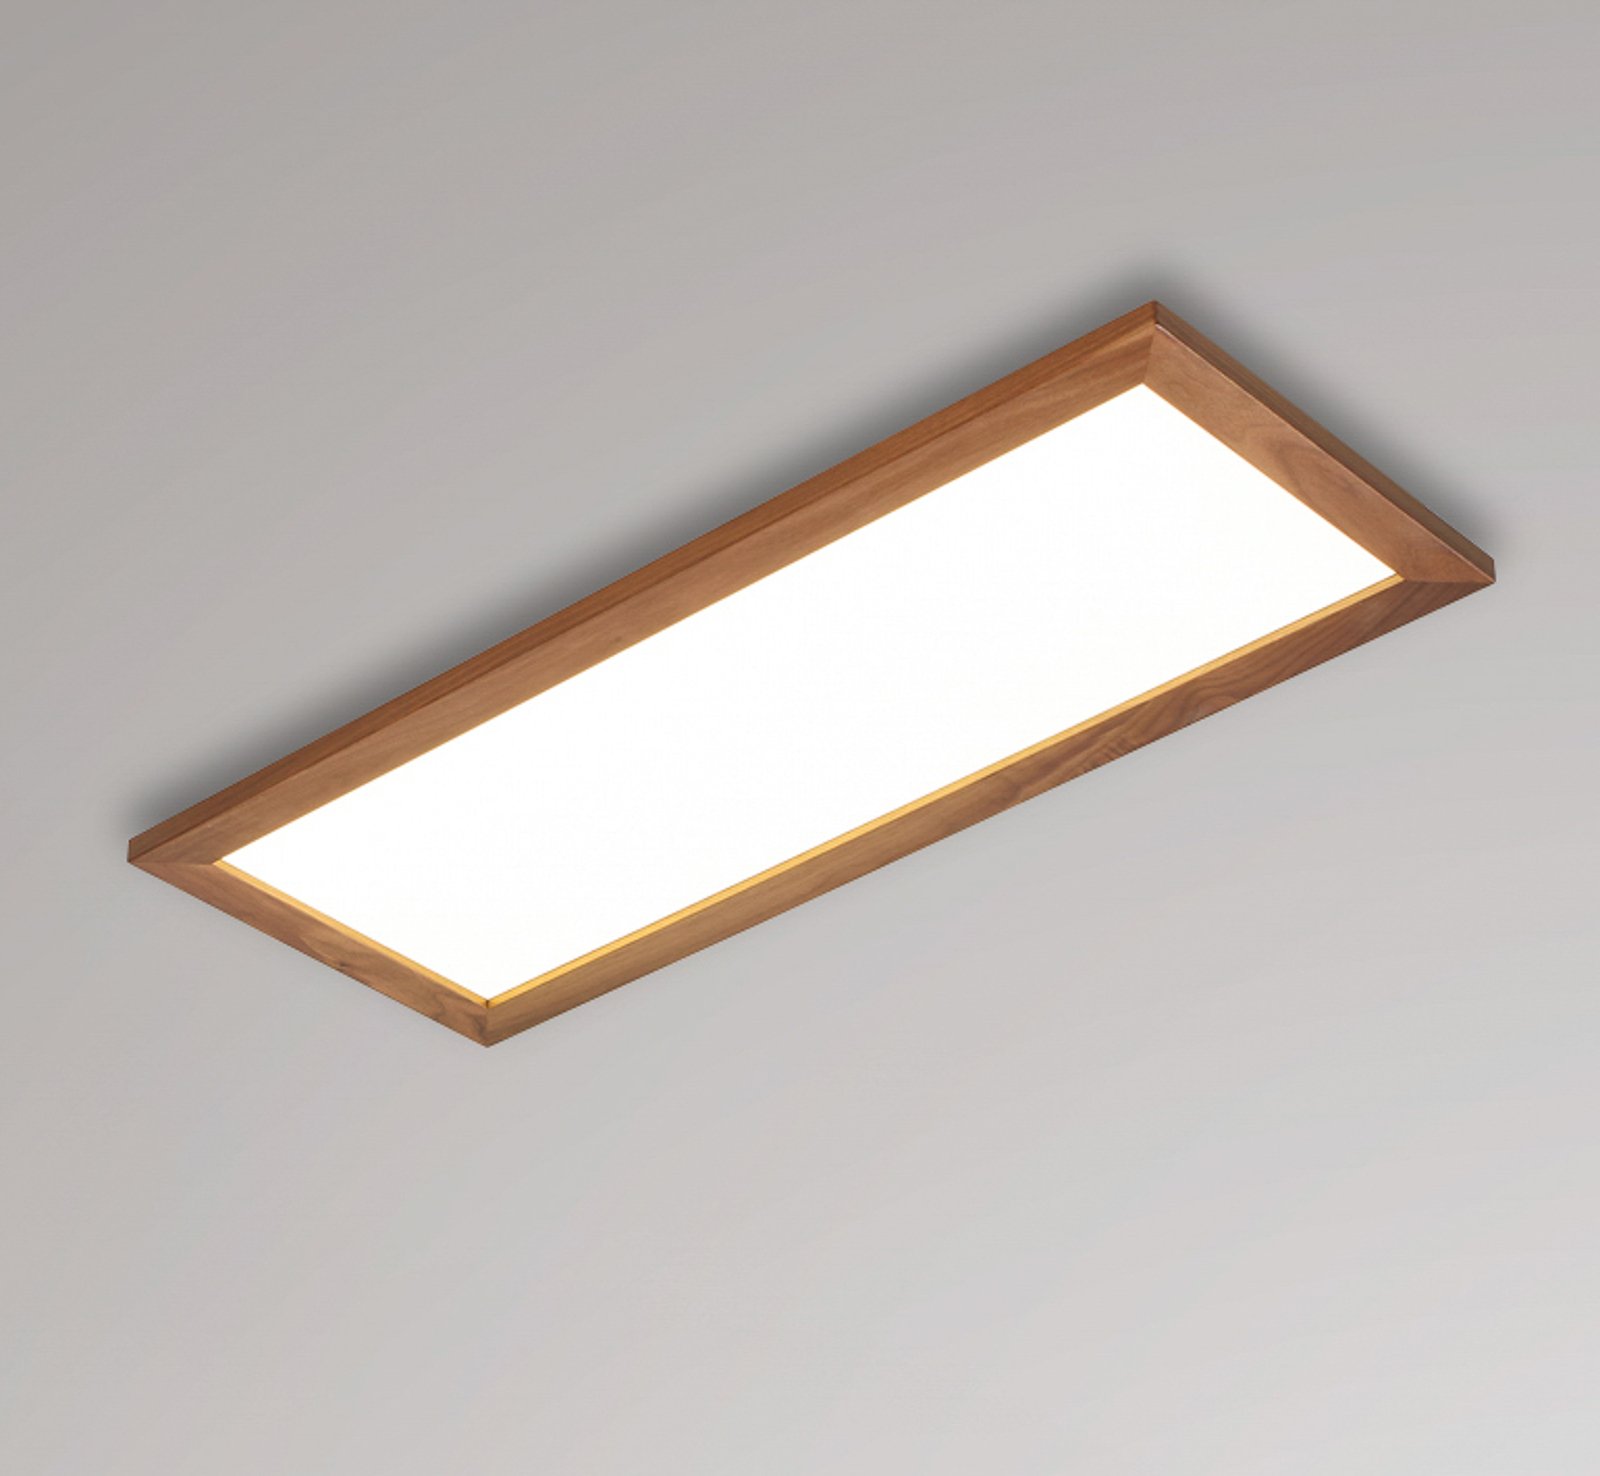 Quitani Aurinor LED-panel, valnöt, 86 cm